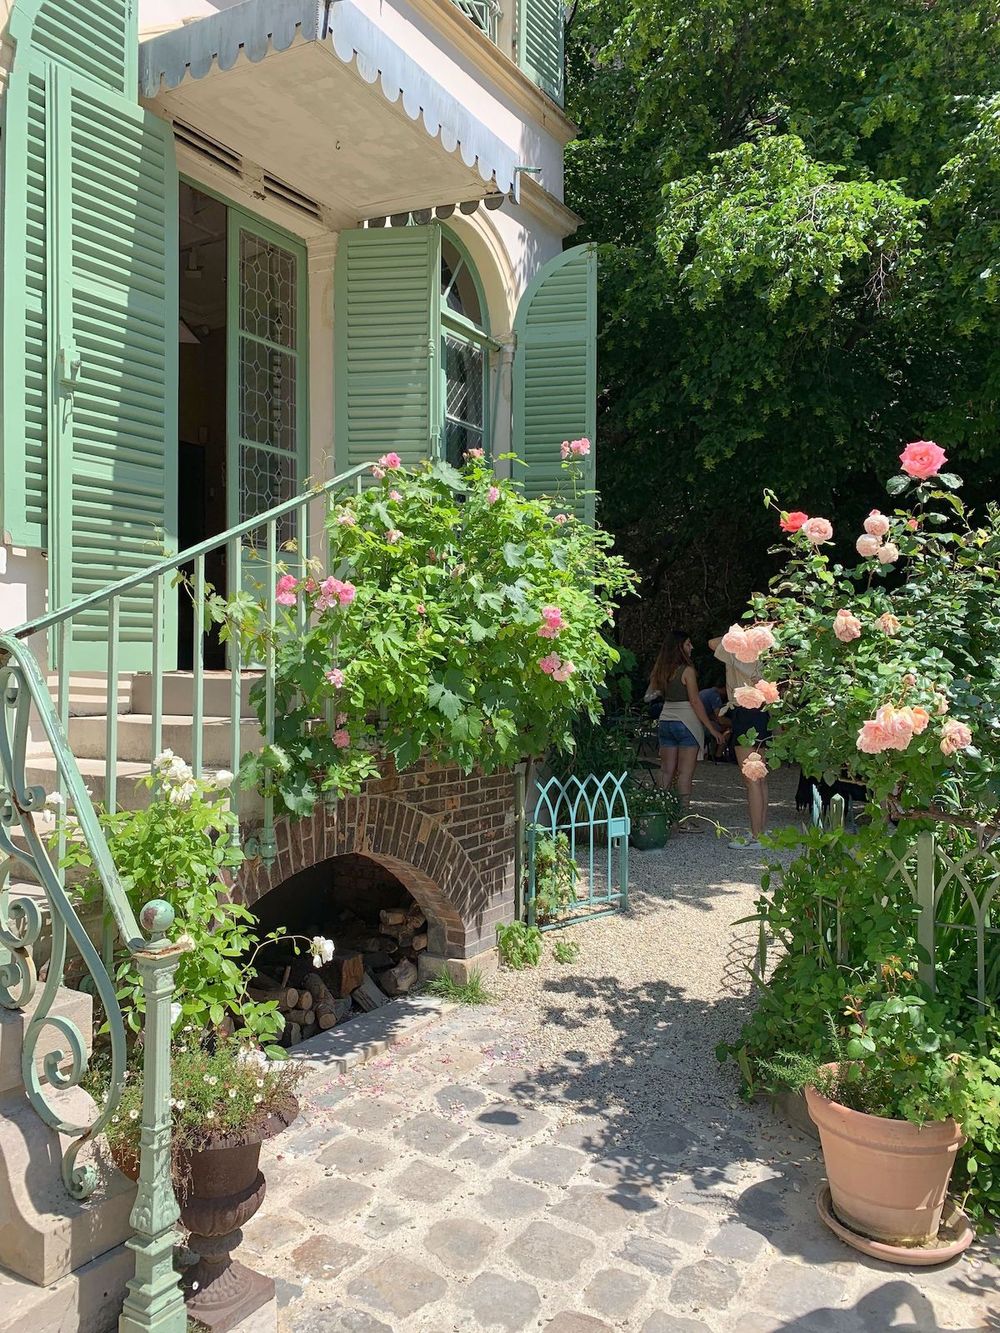 Rose Bakery in the hidden garden courtyard of the Musée de la Vie Romantique